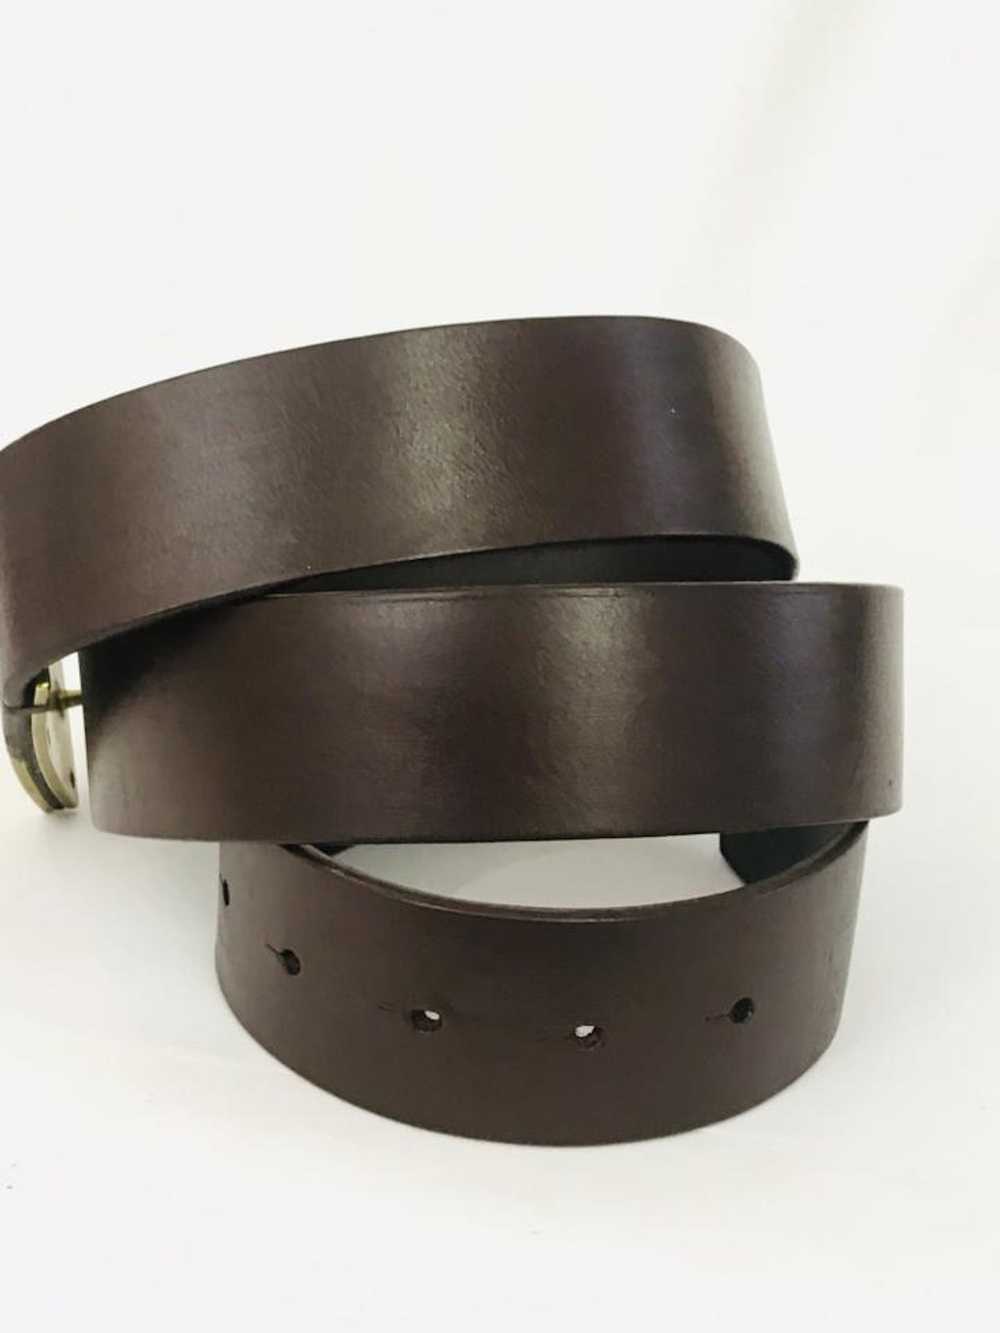 Versace belt - image 3